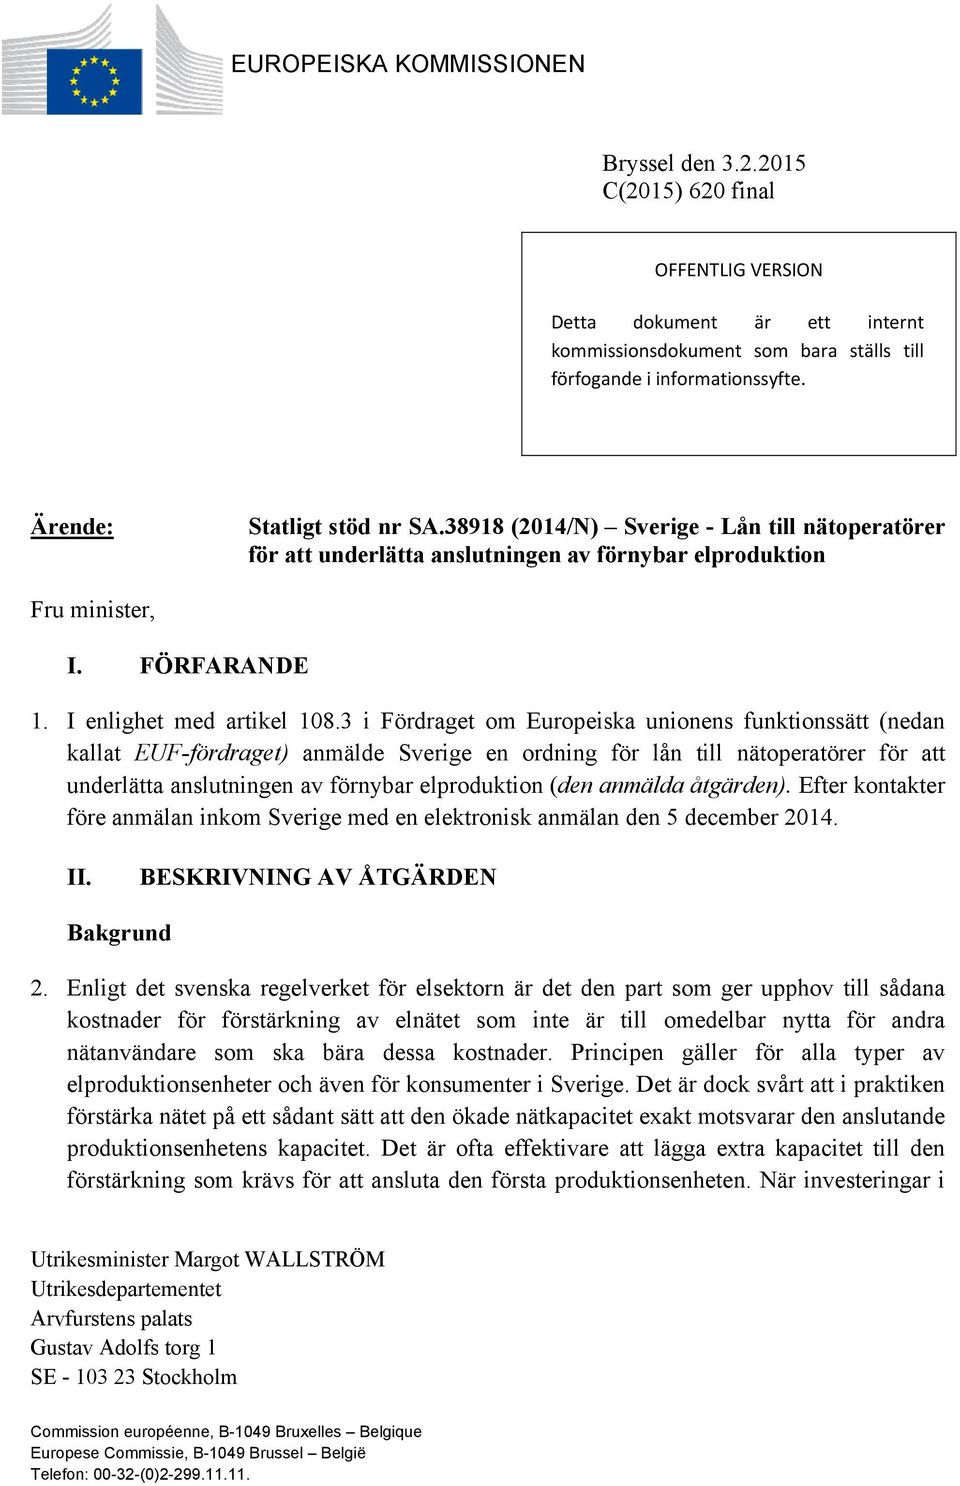 3 i Fördraget om Europeiska unionens funktionssätt (nedan kallat EUF-fördraget) anmälde Sverige en ordning för lån till nätoperatörer för att underlätta anslutningen av förnybar elproduktion (den